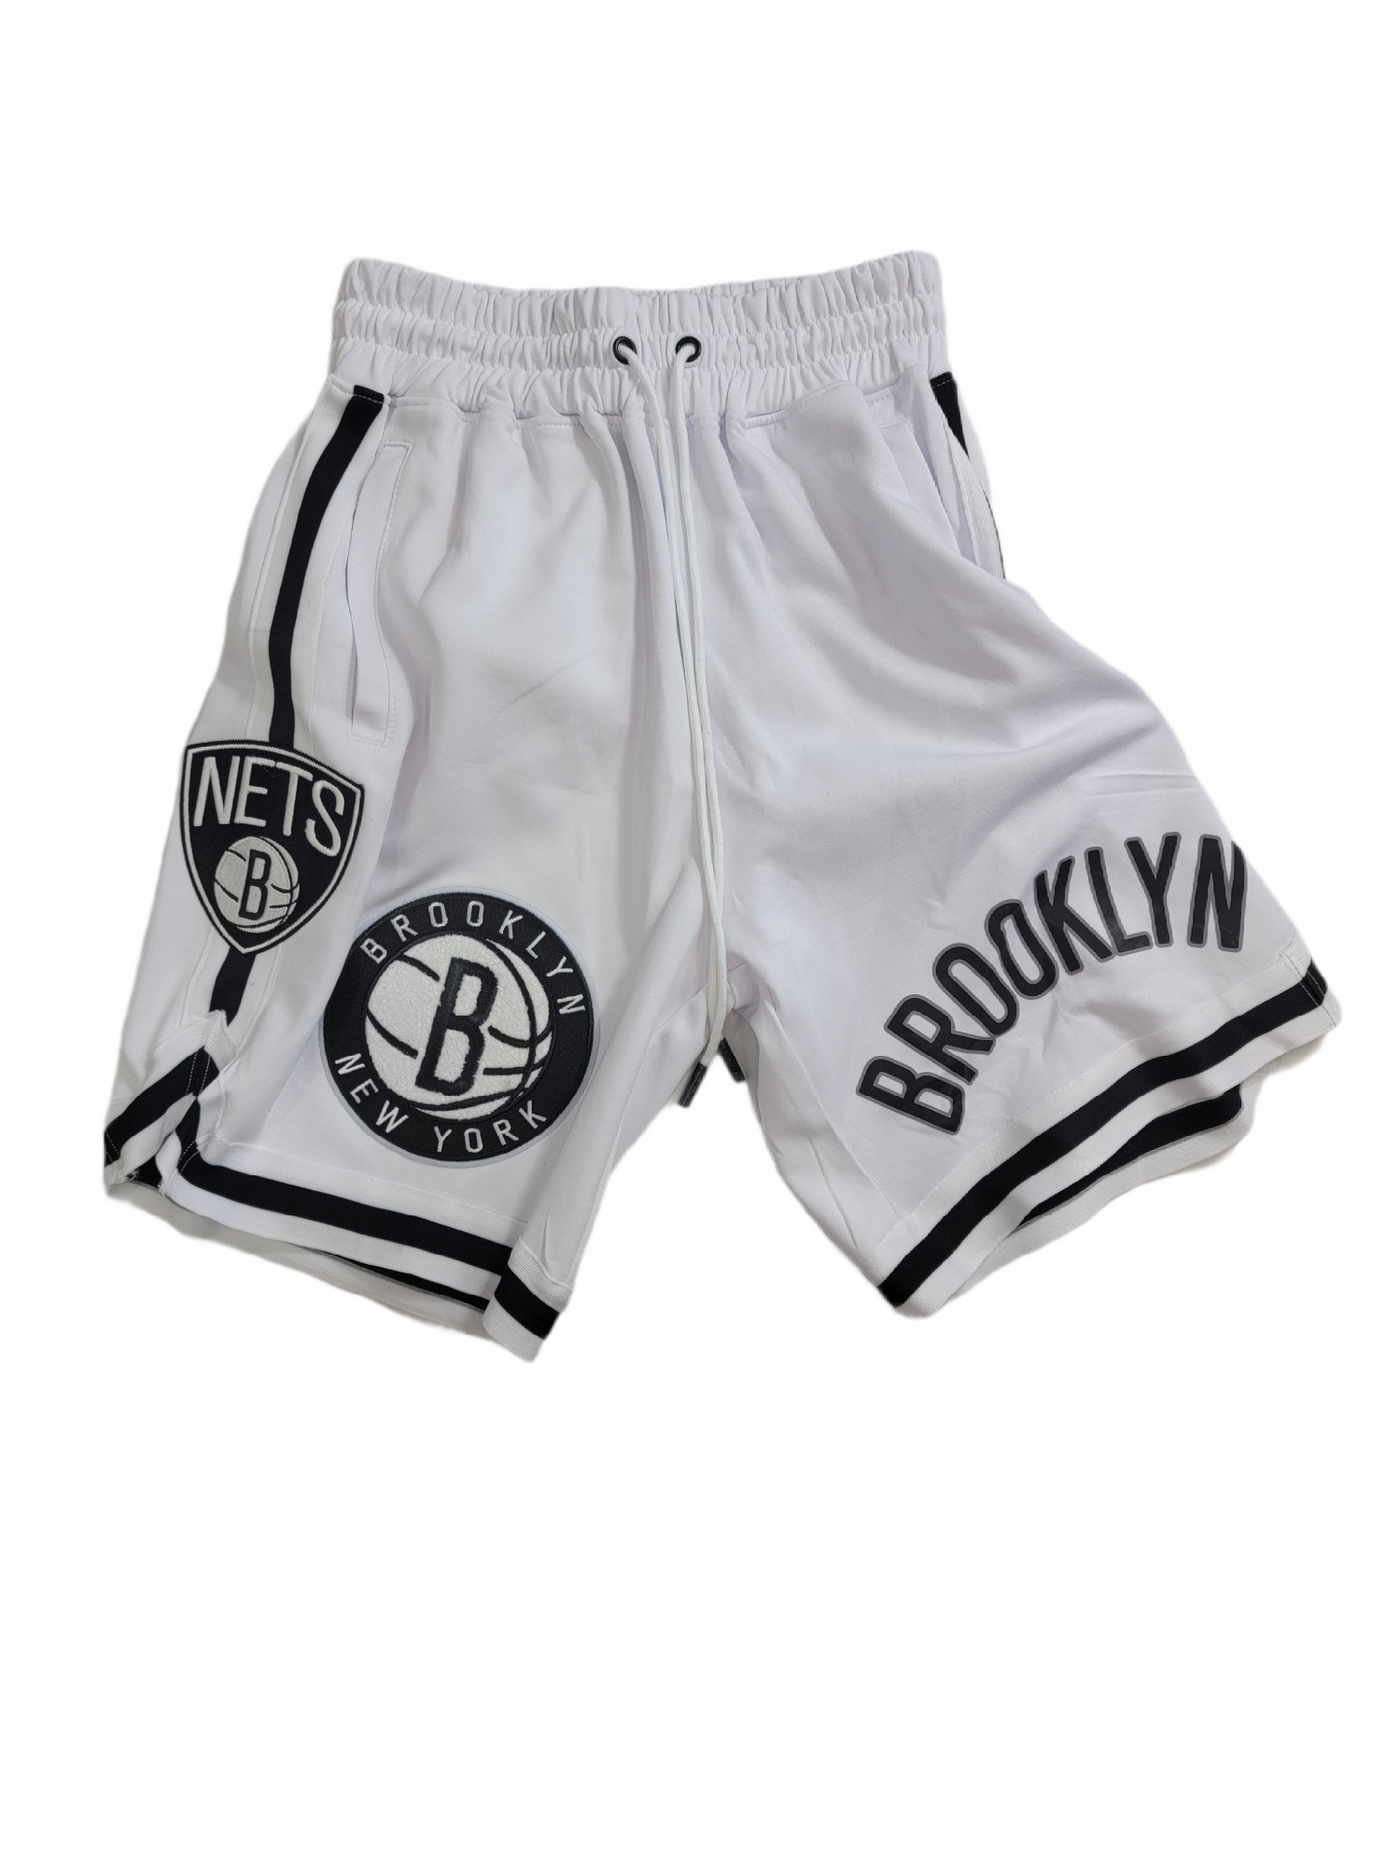 NY Brooklyn Nets White Shorts